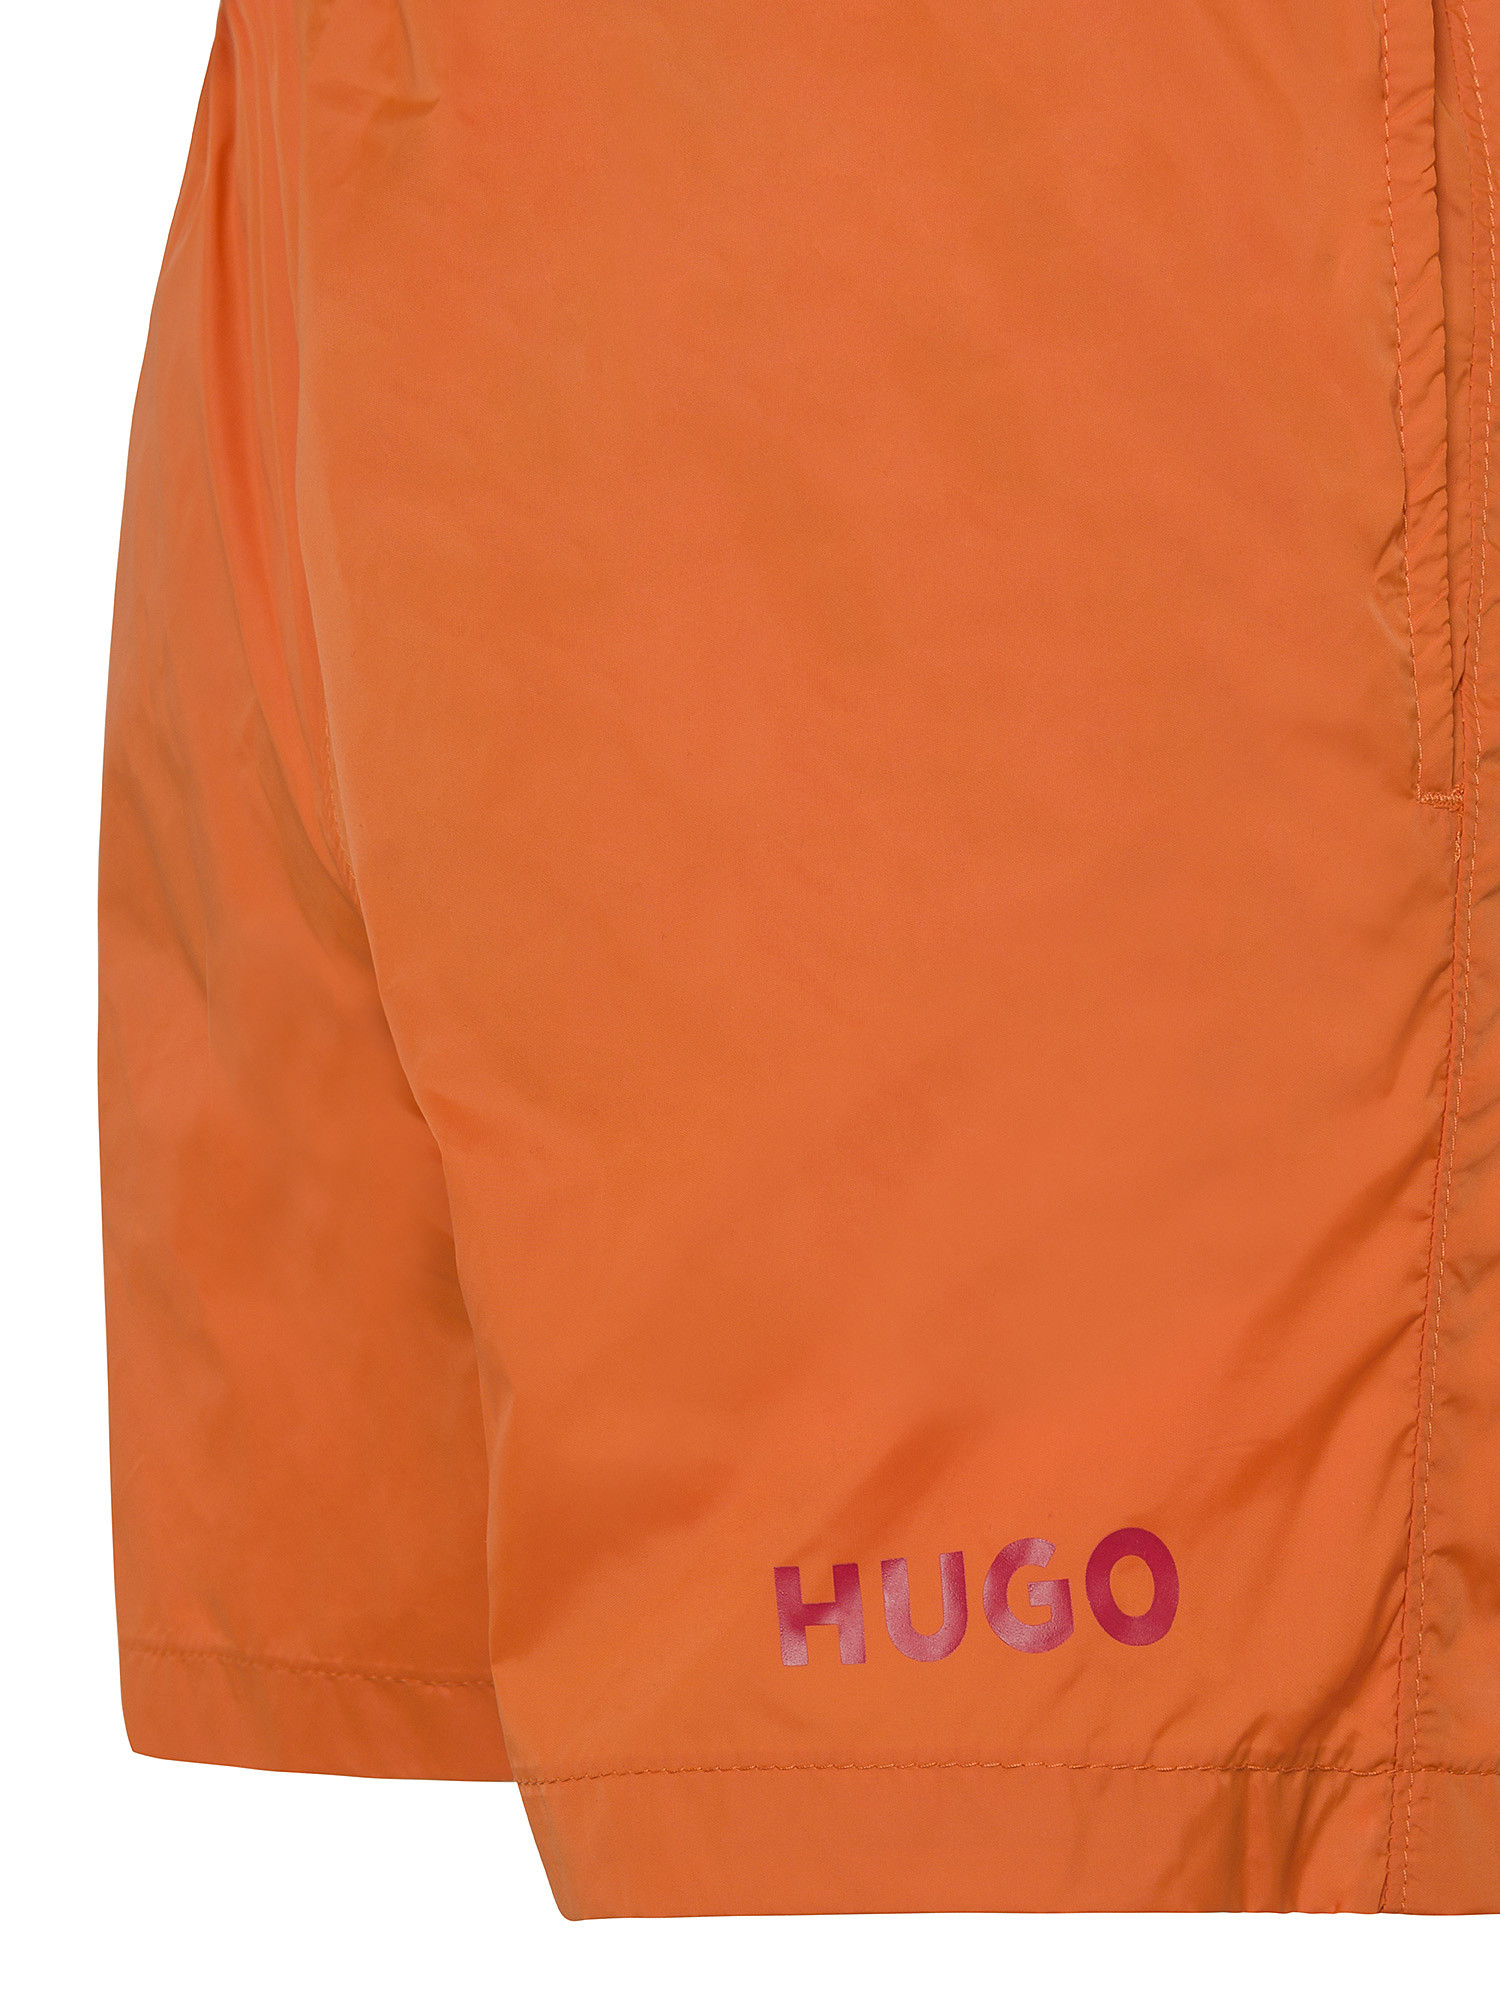 Hugo - Swim boxer with logo, Orange, large image number 2